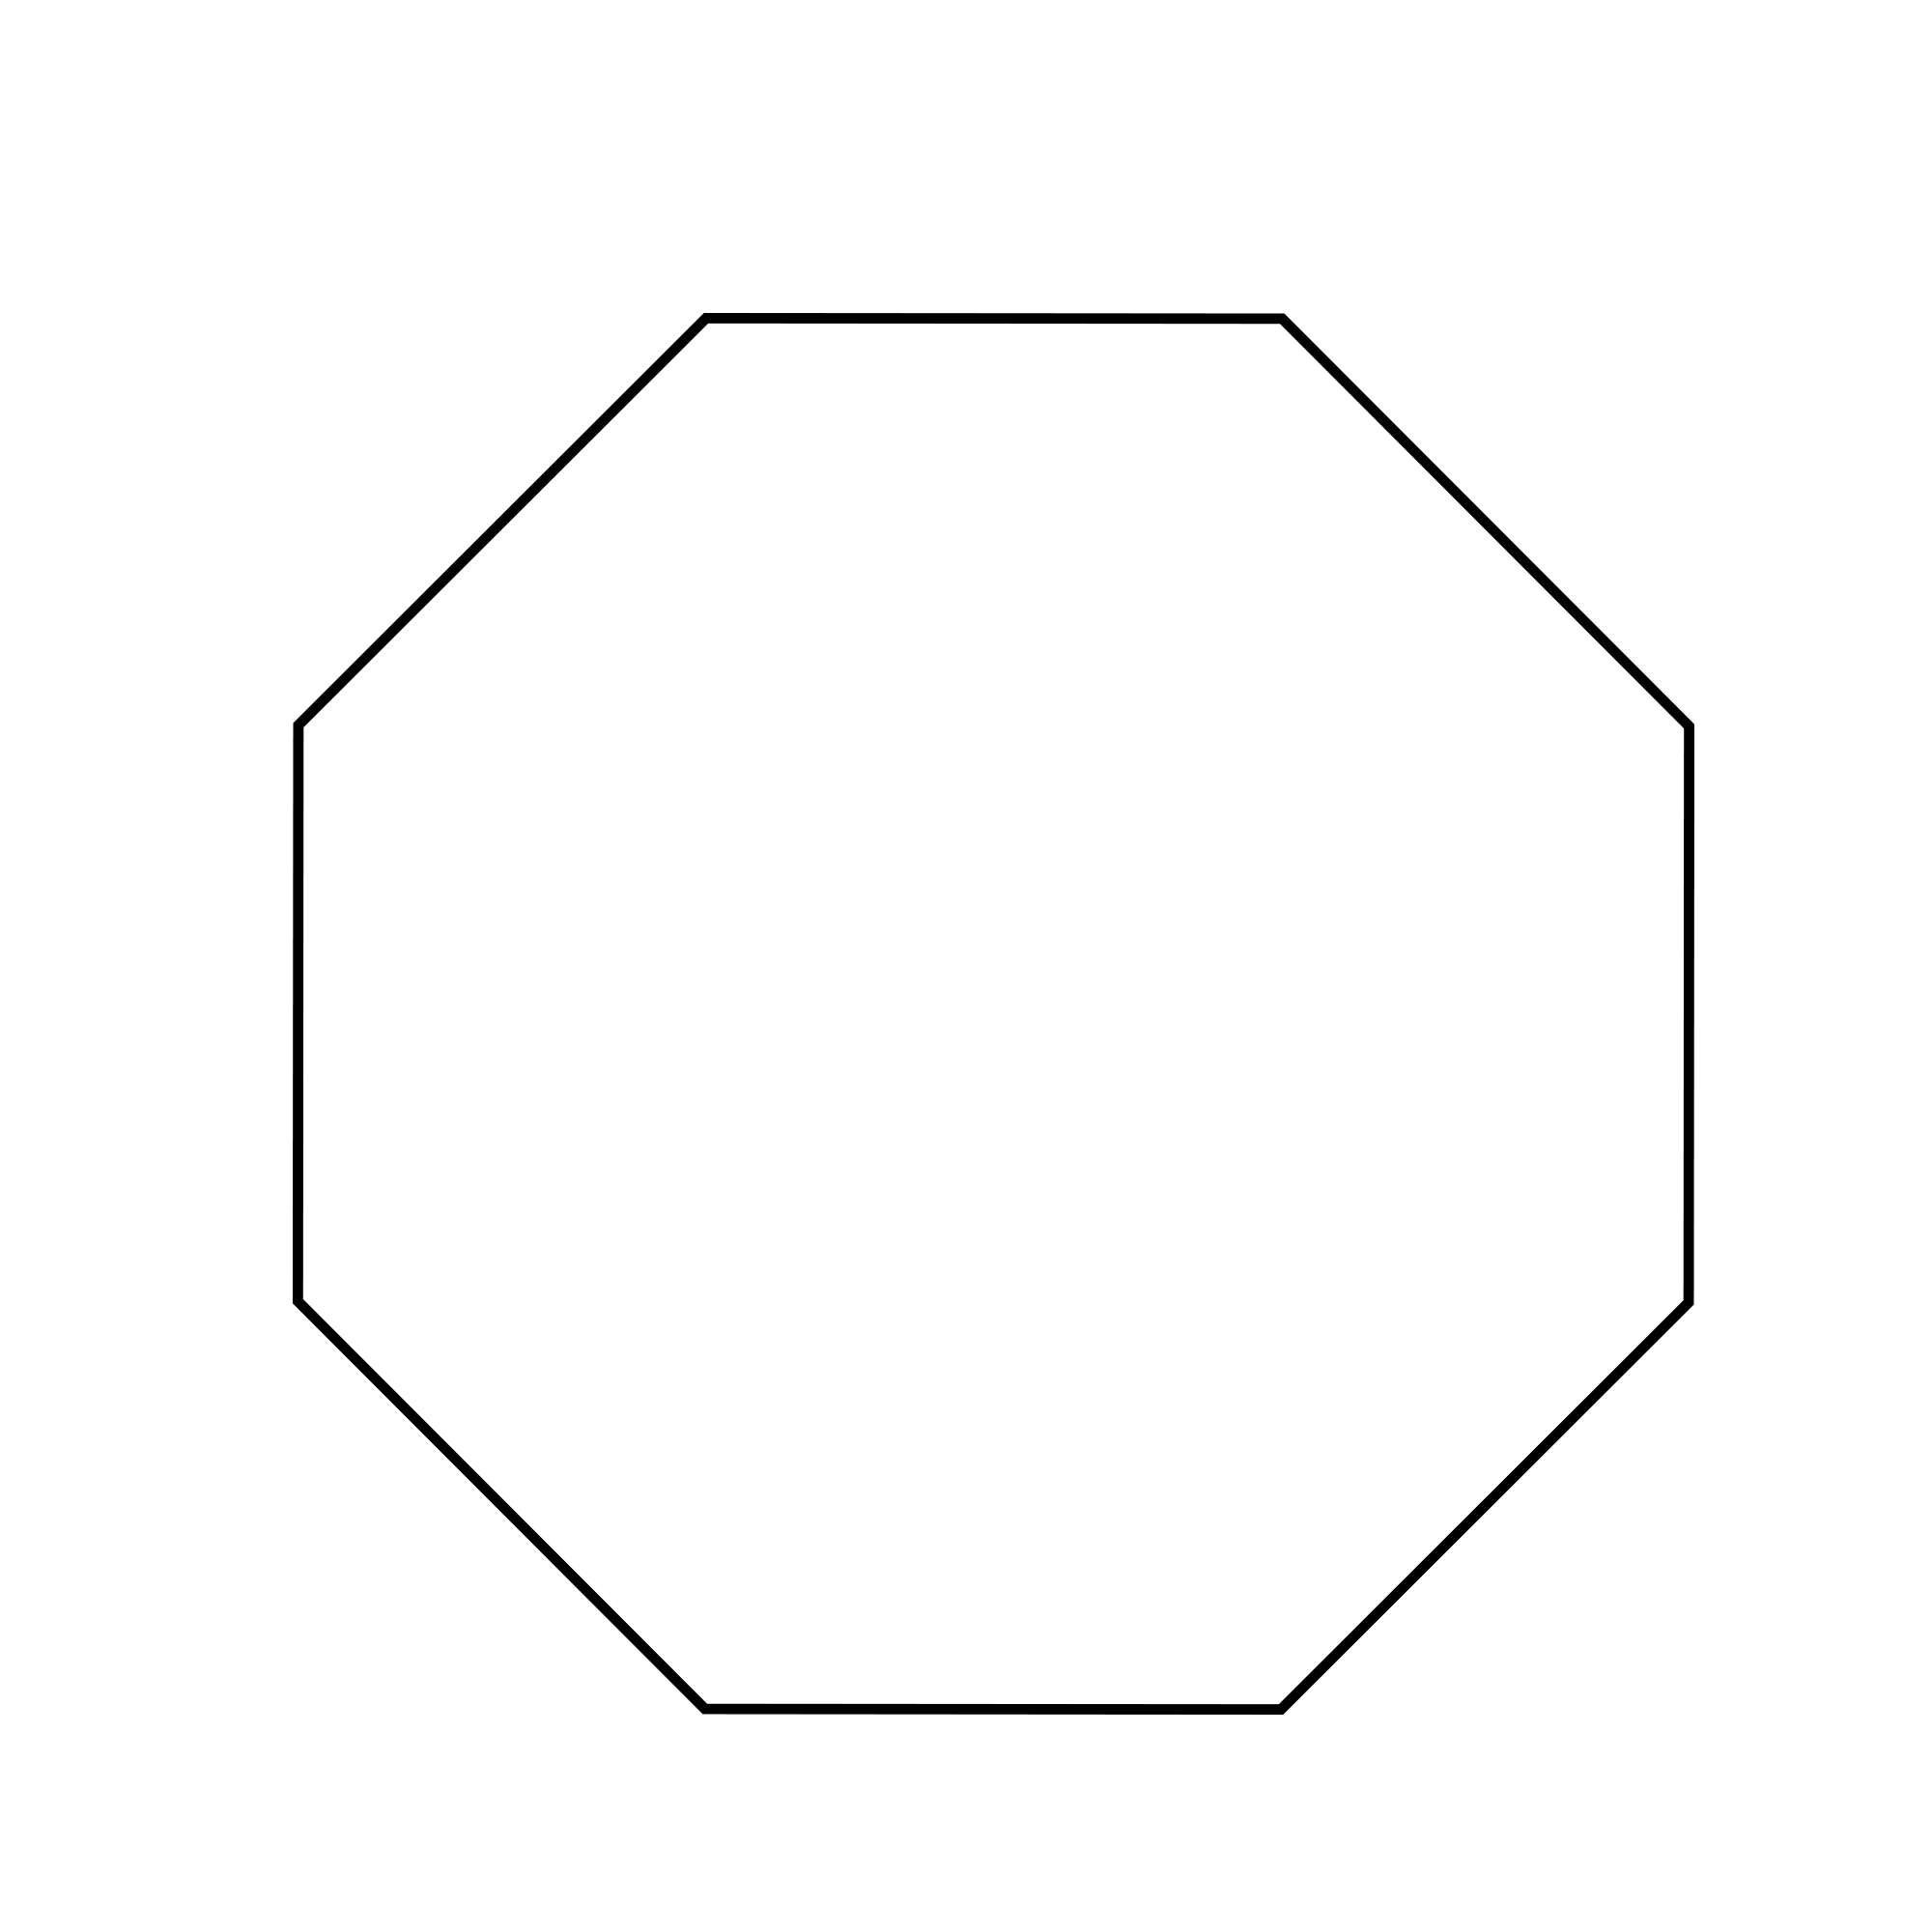 Figure geometriche - Figura geometrica piana - Ottaogono poligono a 8 lati